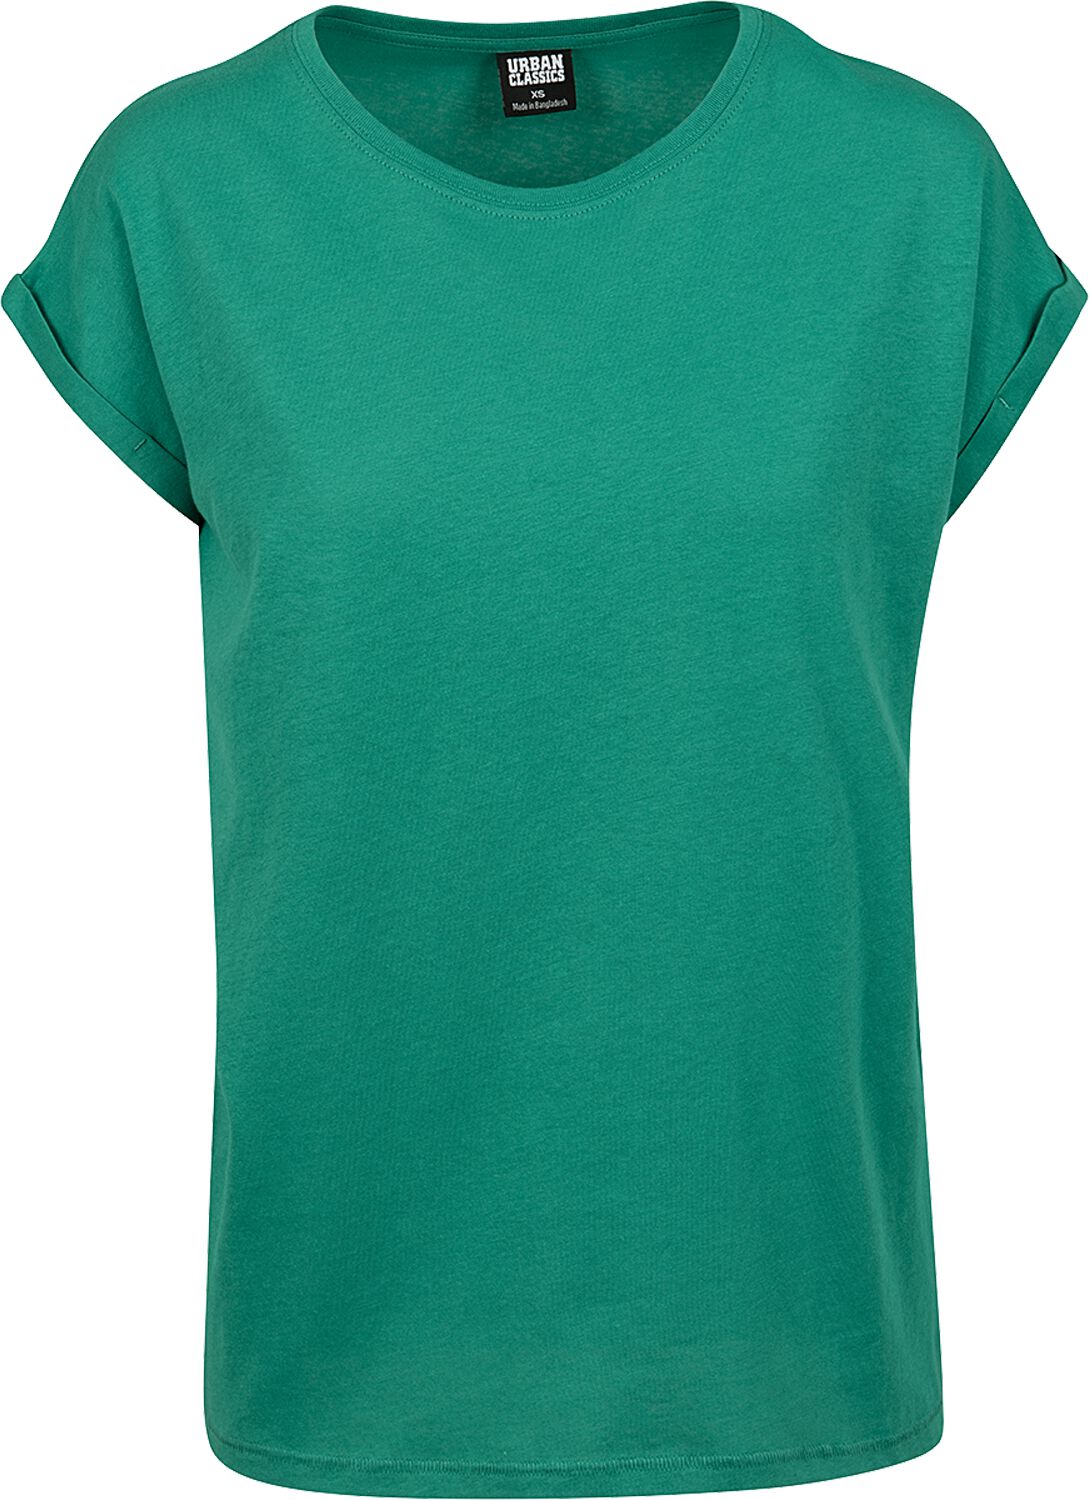 Urban Classics T-Shirt - Ladies Extended Shoulder Tee - S bis 5XL - für Damen - Größe M - grün